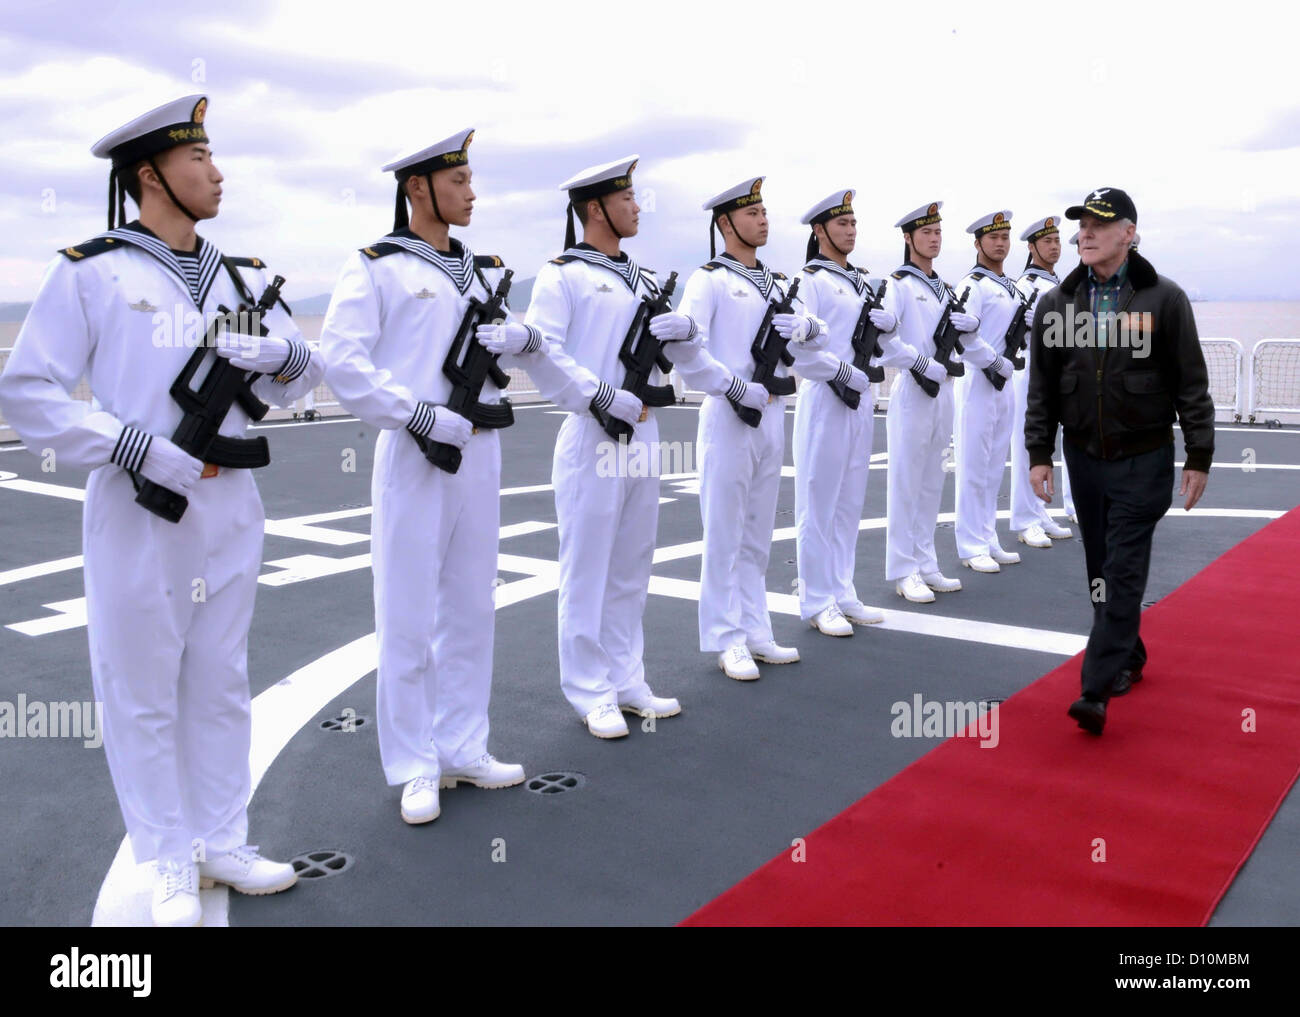 Secretary Of The Navy, Honorable Ray Mabus gerendert wird, honoriert durch chinesische Seeleute bei einem Besuch in der chinesischen Volksrepublik Liberation Army Navy Jiangkai II-Klasse Schiff Xu Zhou (FFG-539). Mabus besucht China um die neue US-Verteidigungsstrategie besprechen Dee Stockfoto